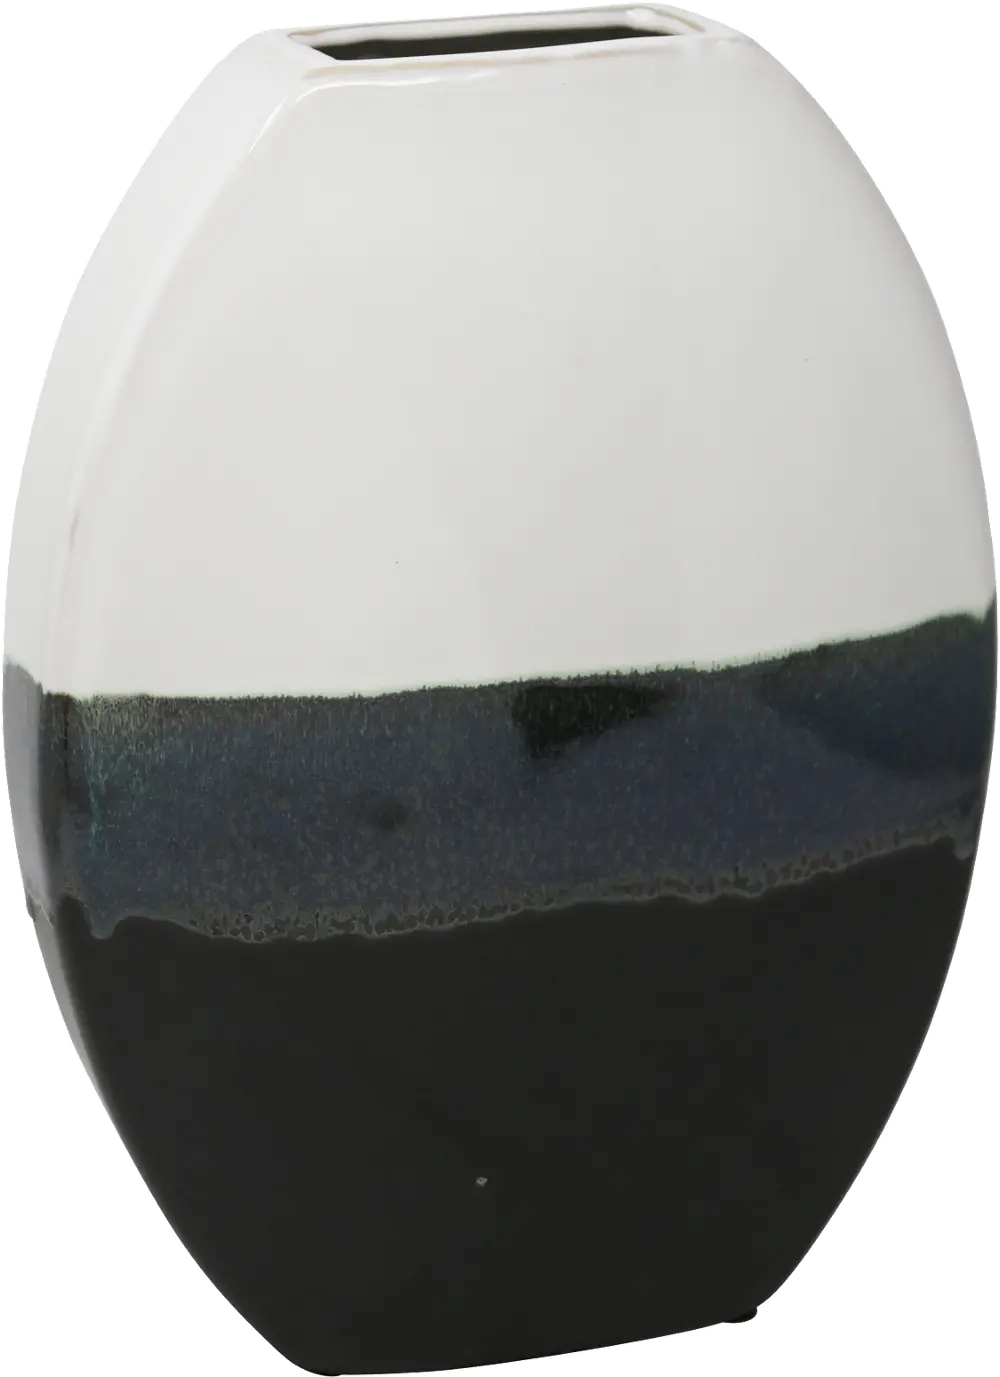 12 Inch White and Black Ceramic Vase-1